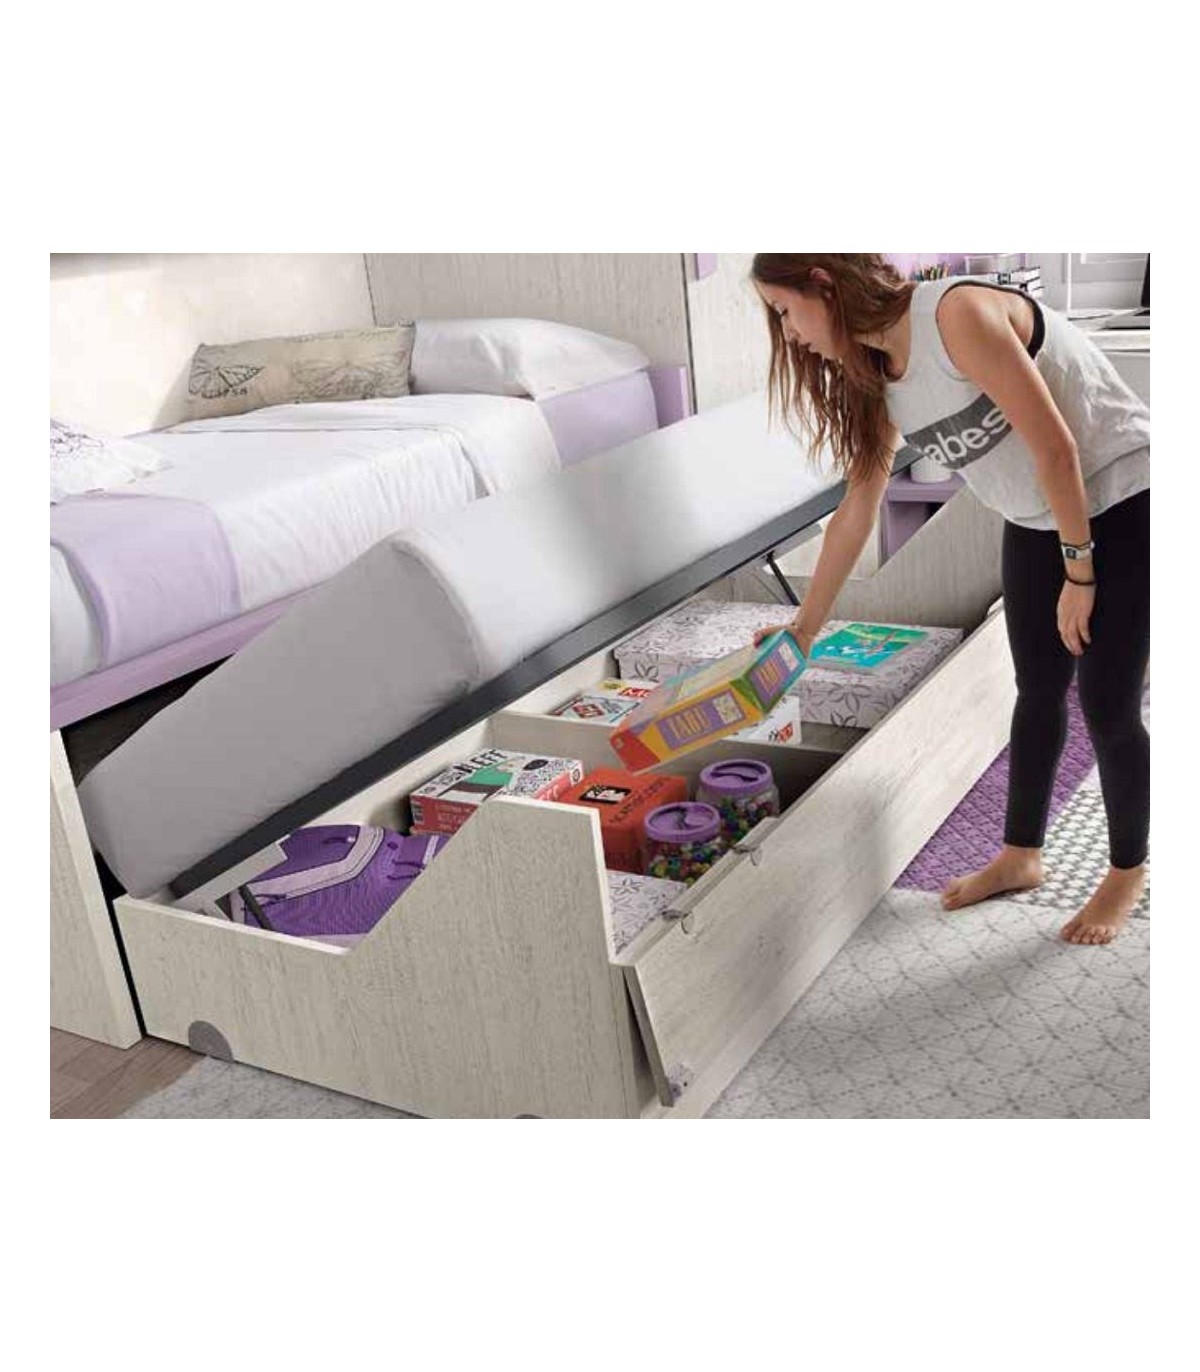 Venta de Canapés cama de 105 x 190 cm - La mayor oferta del mercado 